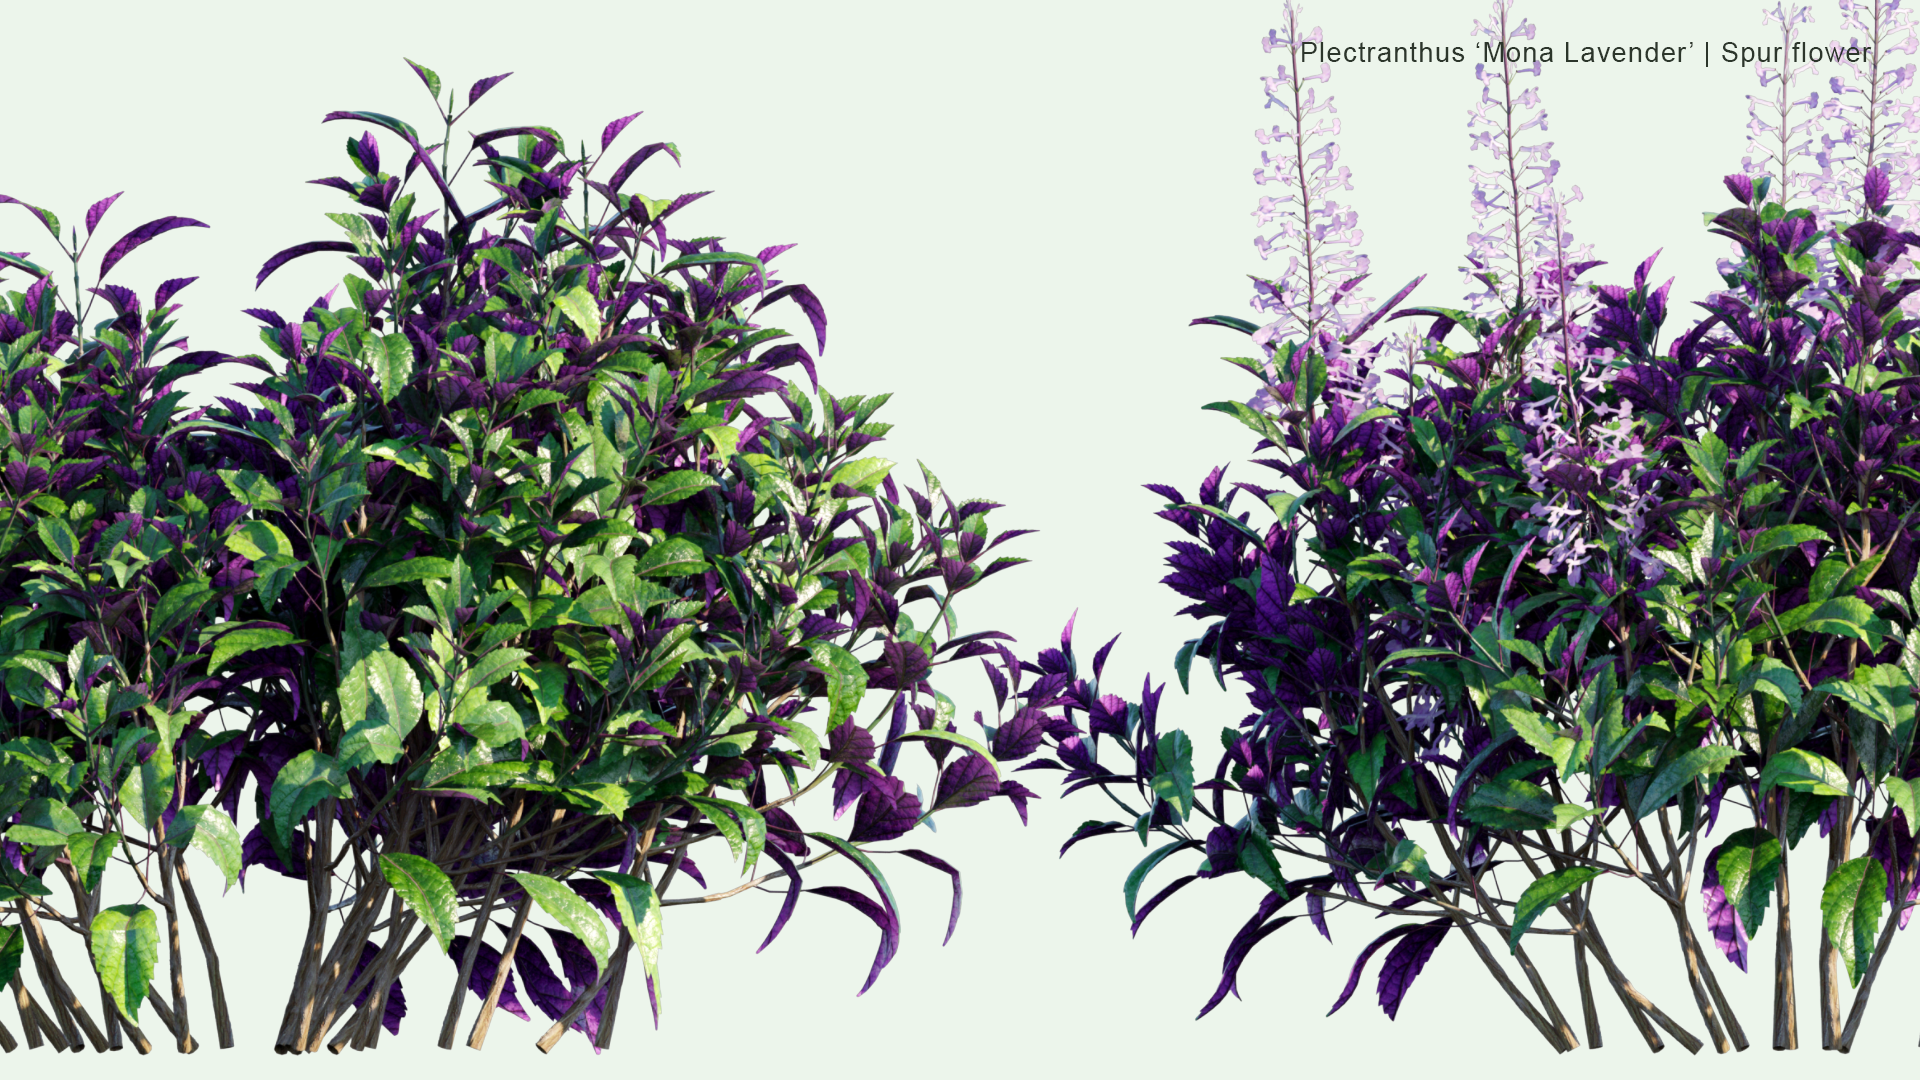 2D Plectranthus 'Mona Lavender' - Spur Flower